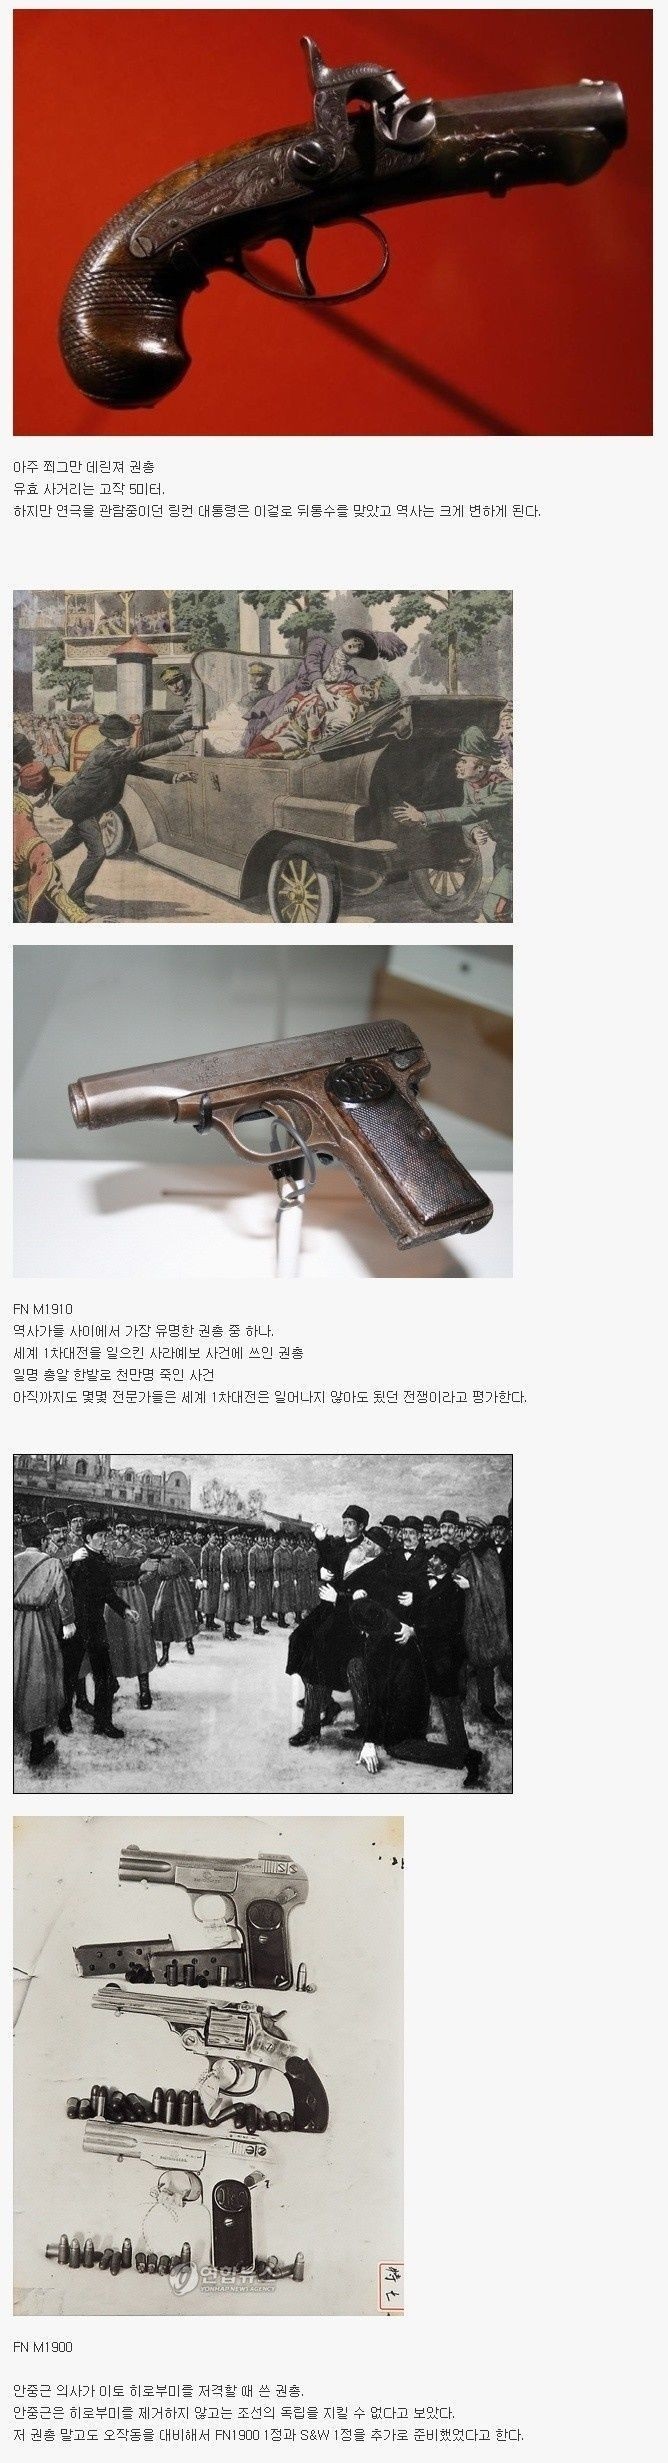 역사를 바꾼 권총..jpg